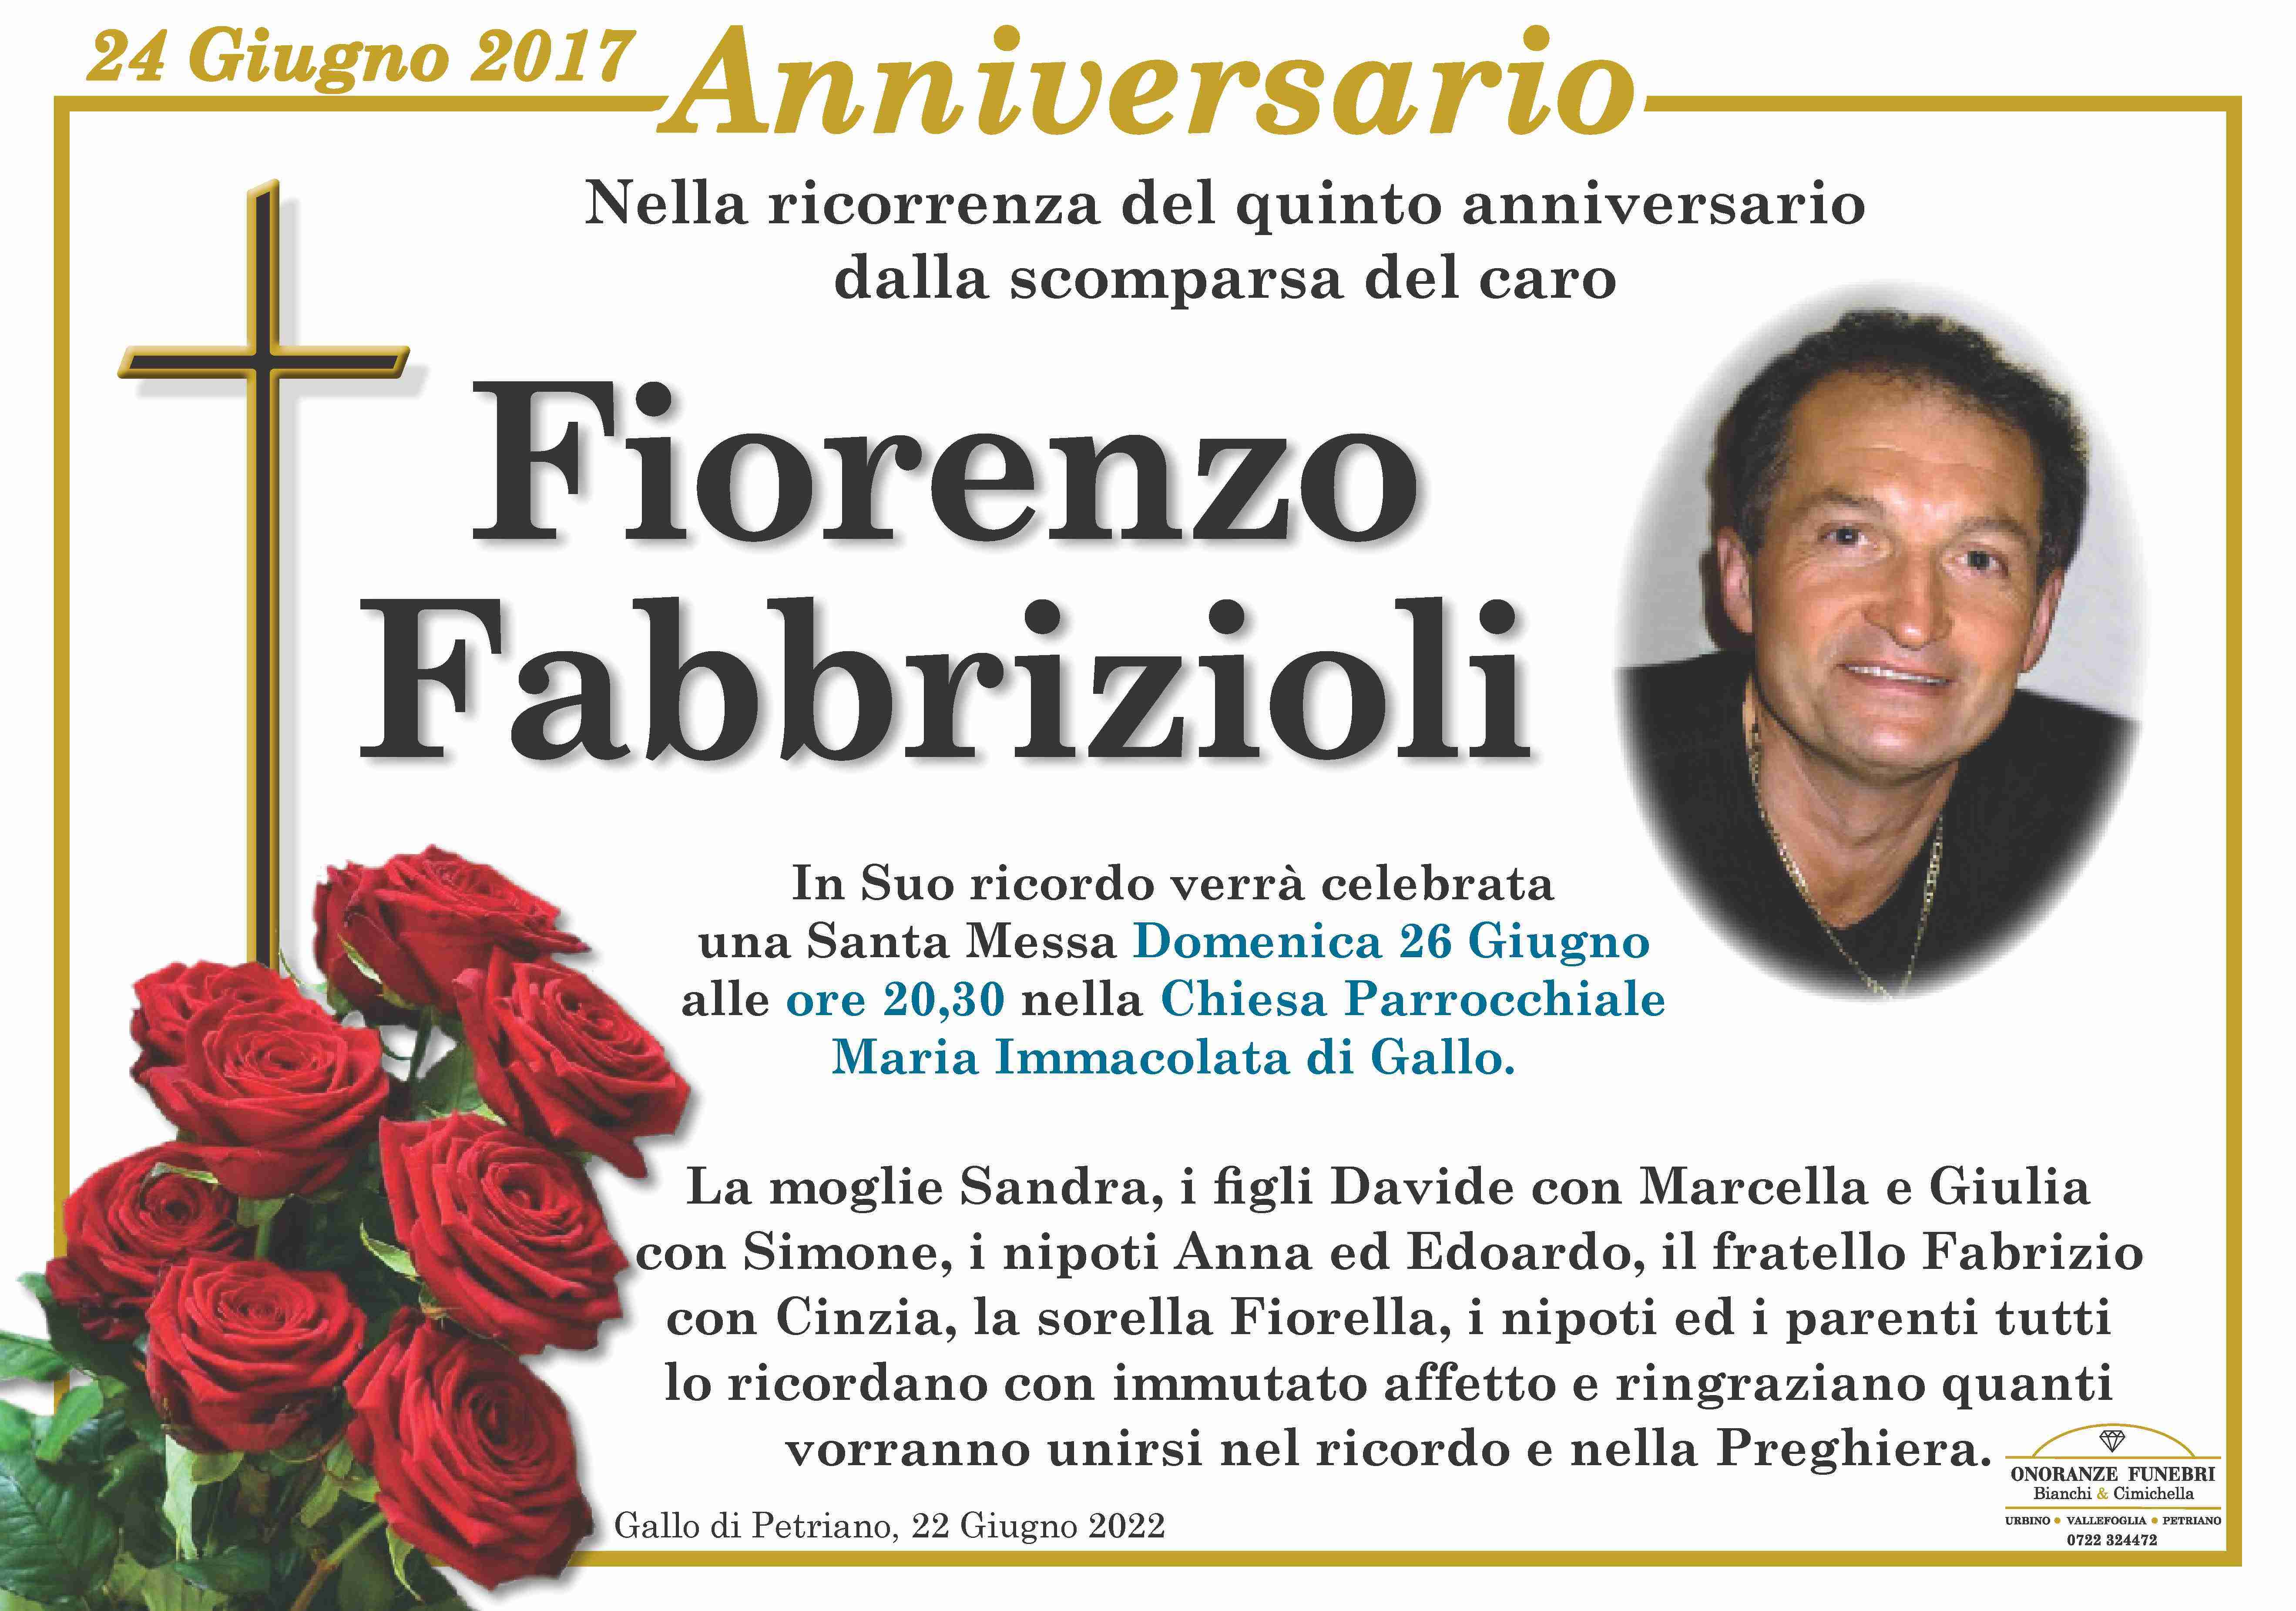 Fiorenzo Fabbrizioli